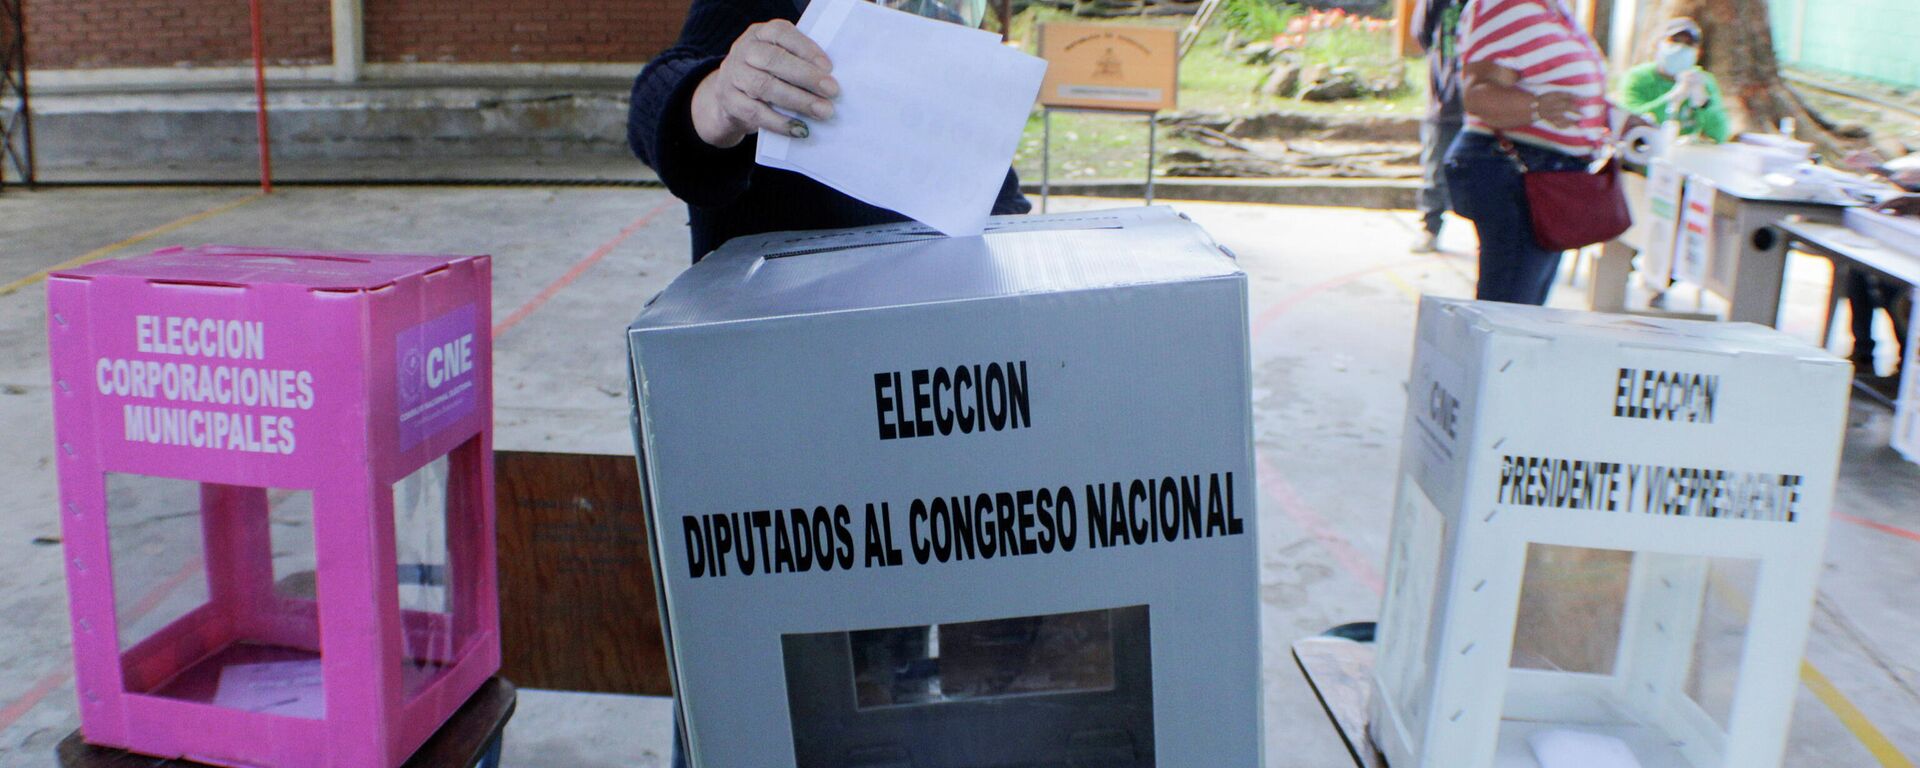 Elecciones primarias en Honduras - Sputnik Mundo, 1920, 22.03.2021